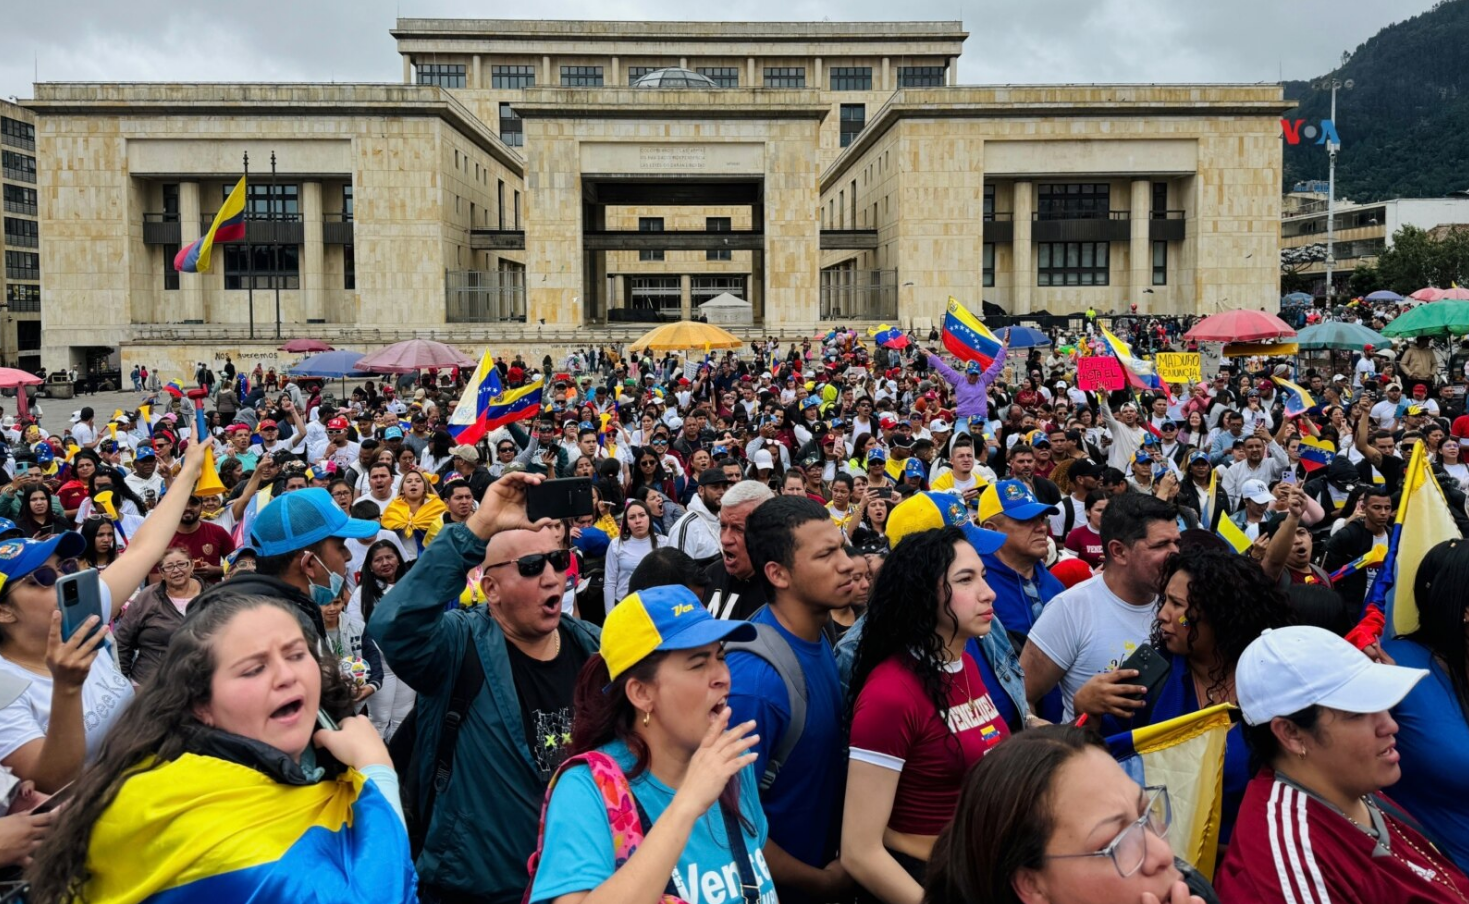 “Le tienen miedo a la diáspora”: oposición venezolana lanzó campaña presidencial en Colombia